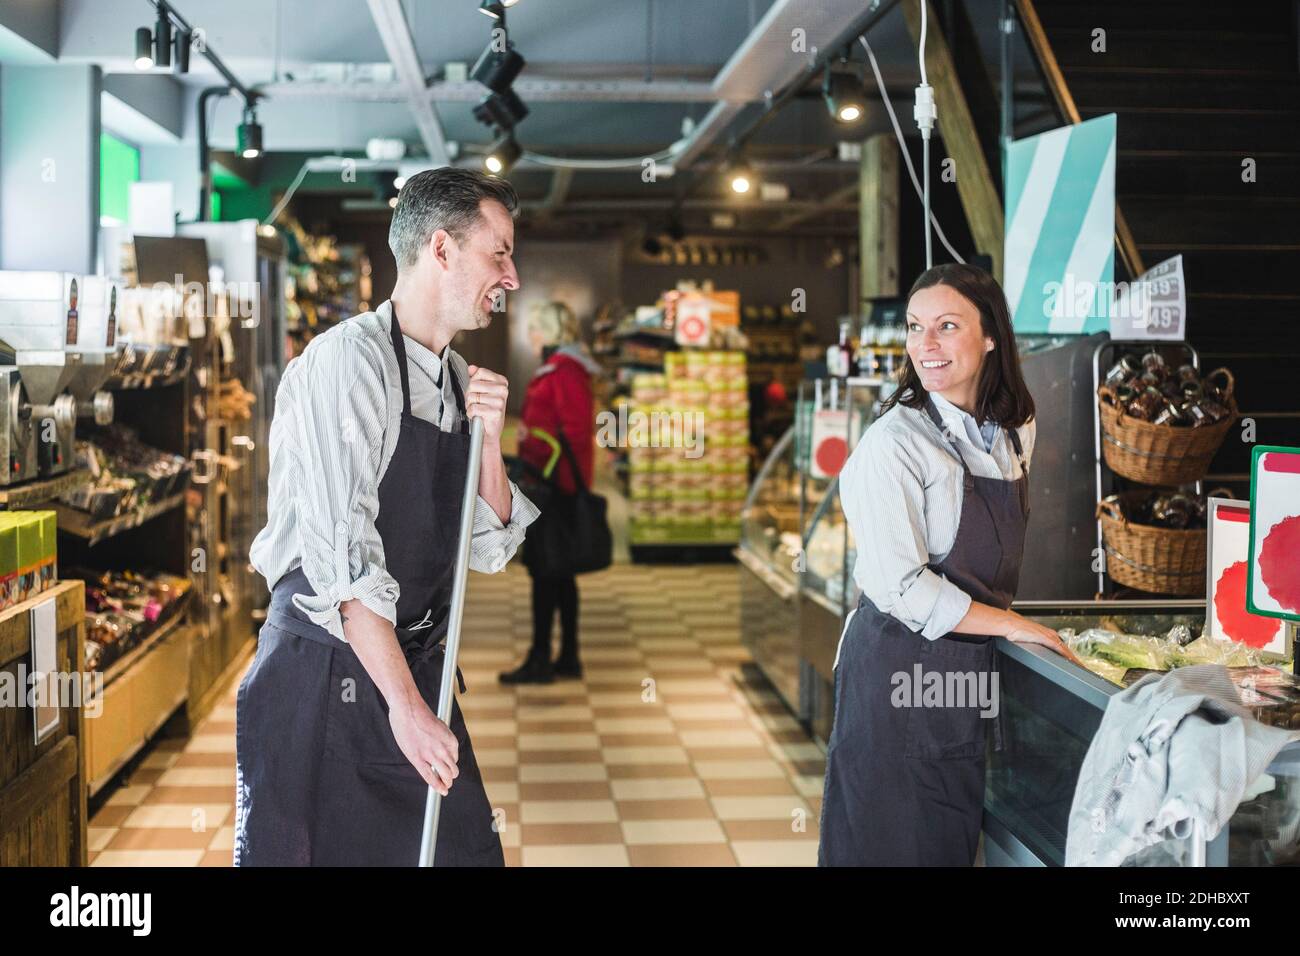 Lächelnder Verkäufer hält Besen, während er die Verkäuferin anschaut Supermarkt Stockfoto